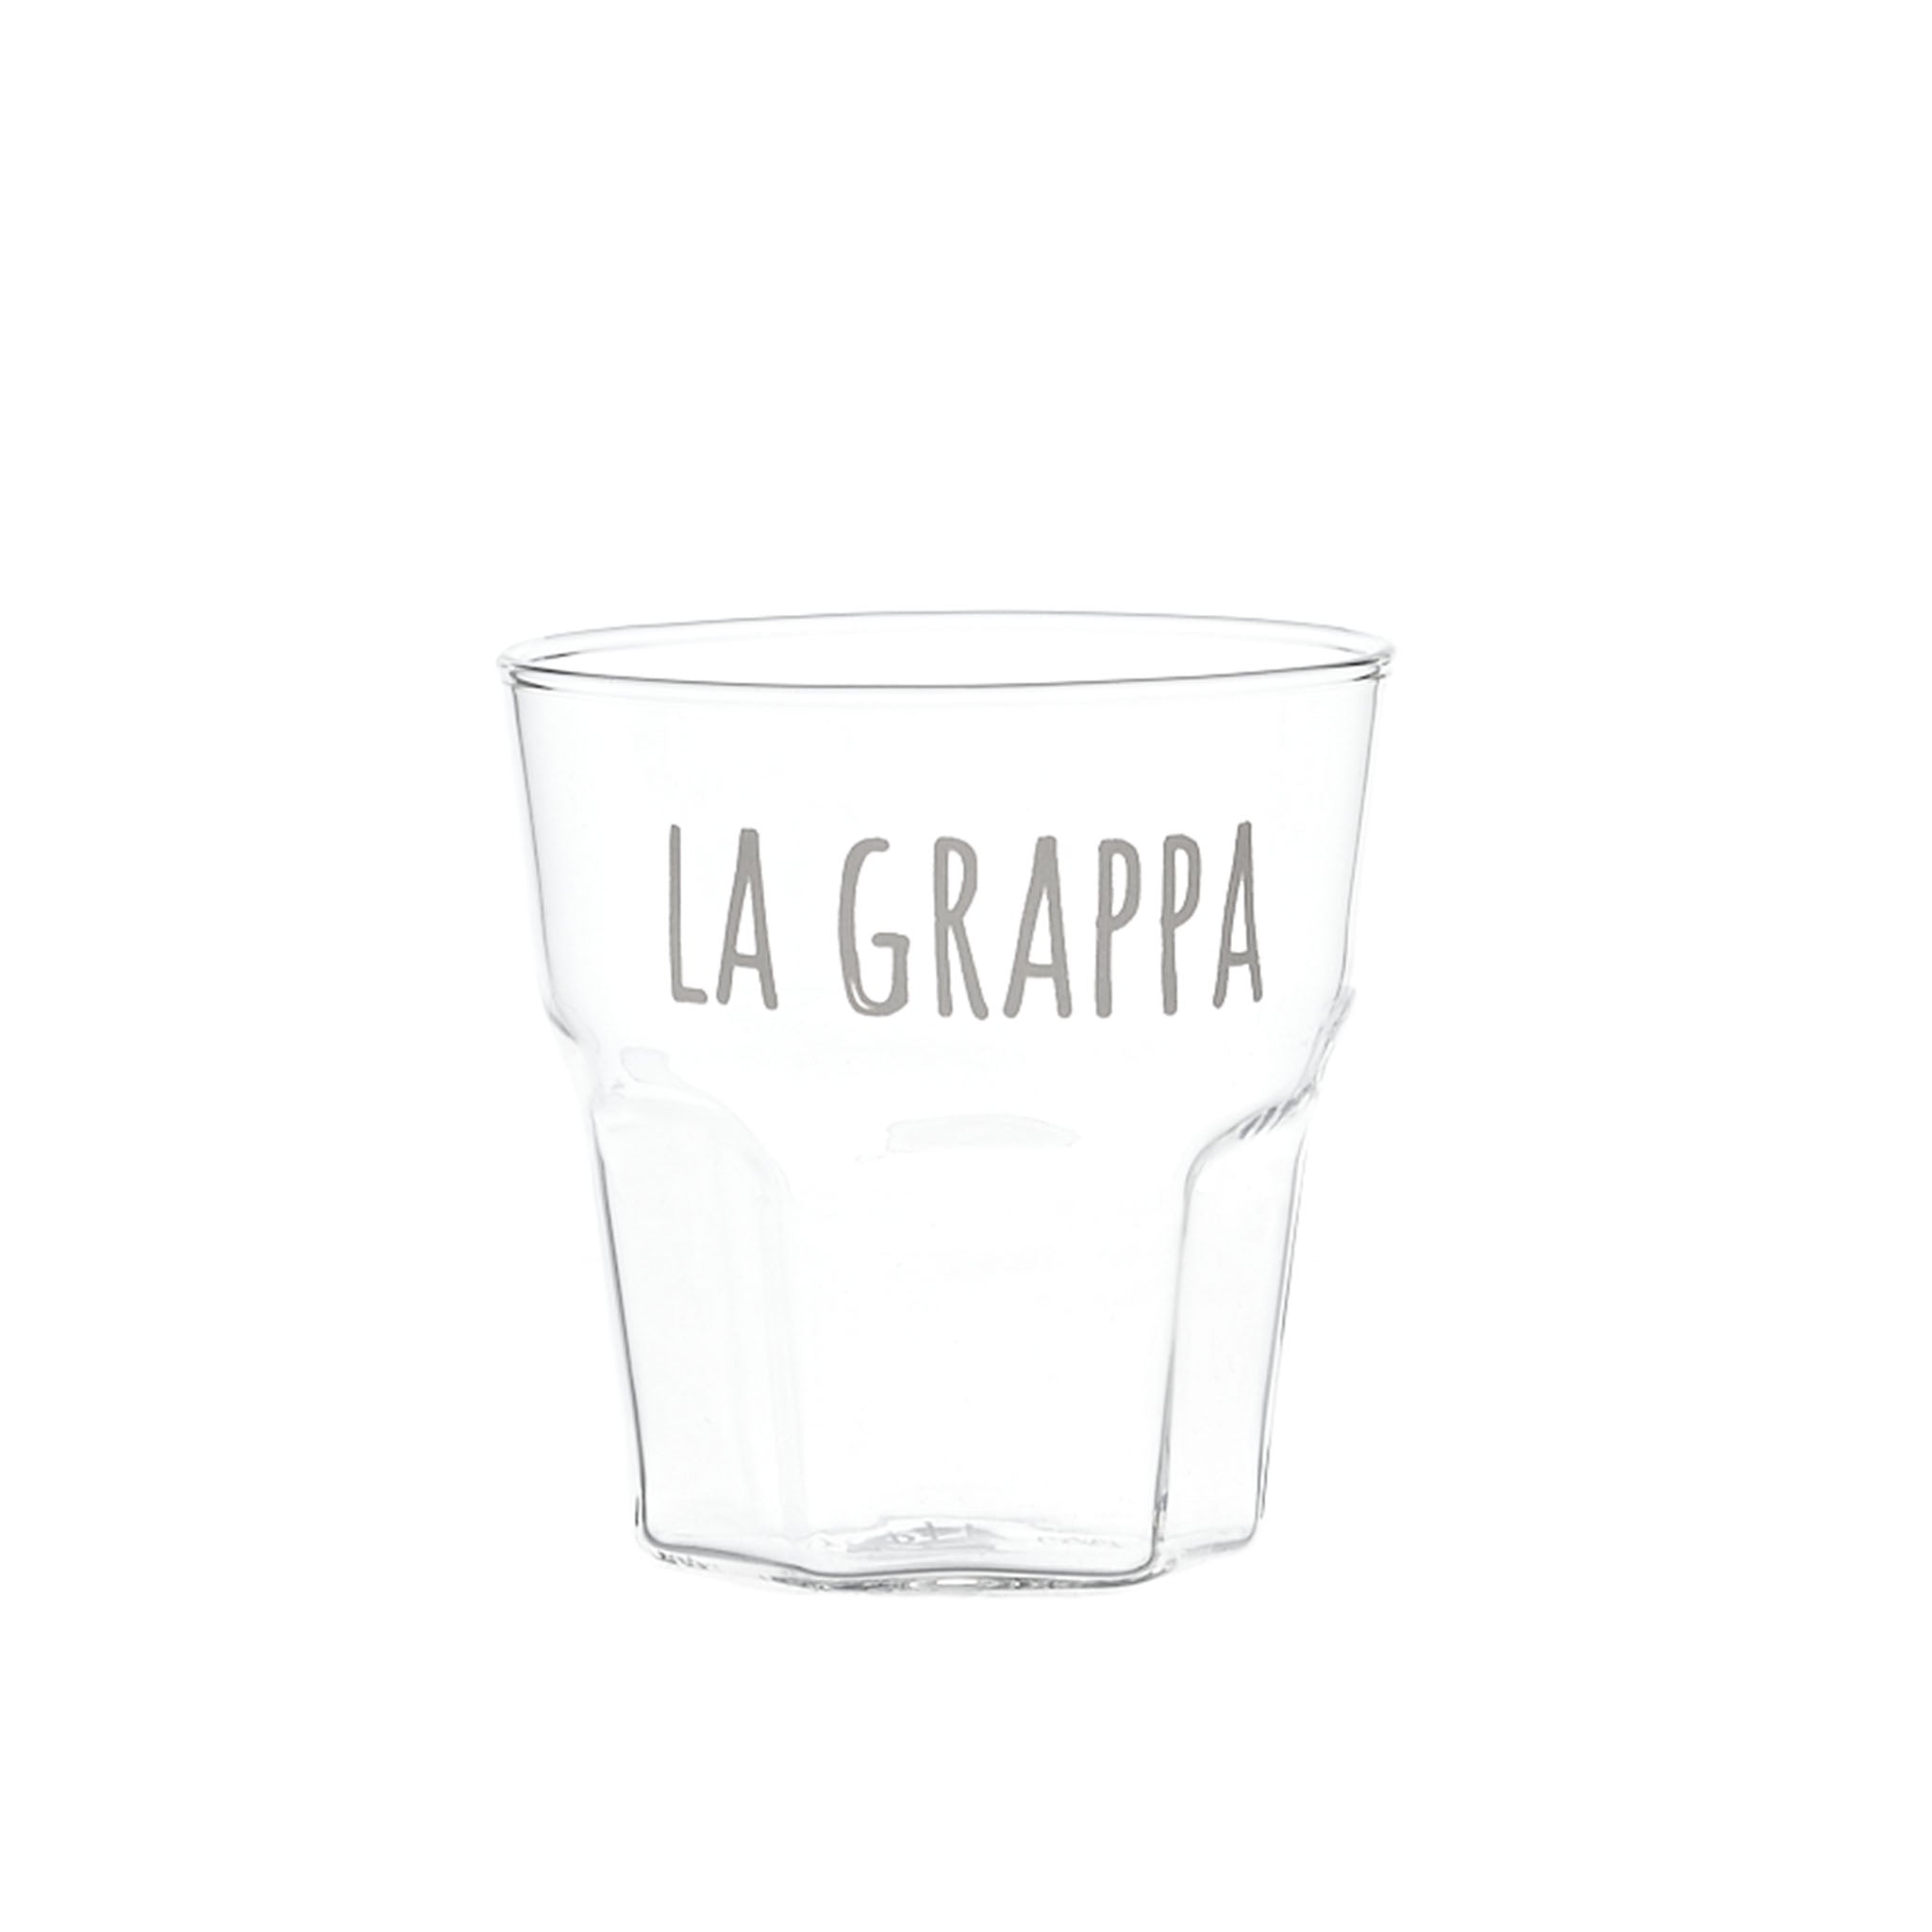 Liquor Glass "La Grappa" in White - Set of 4